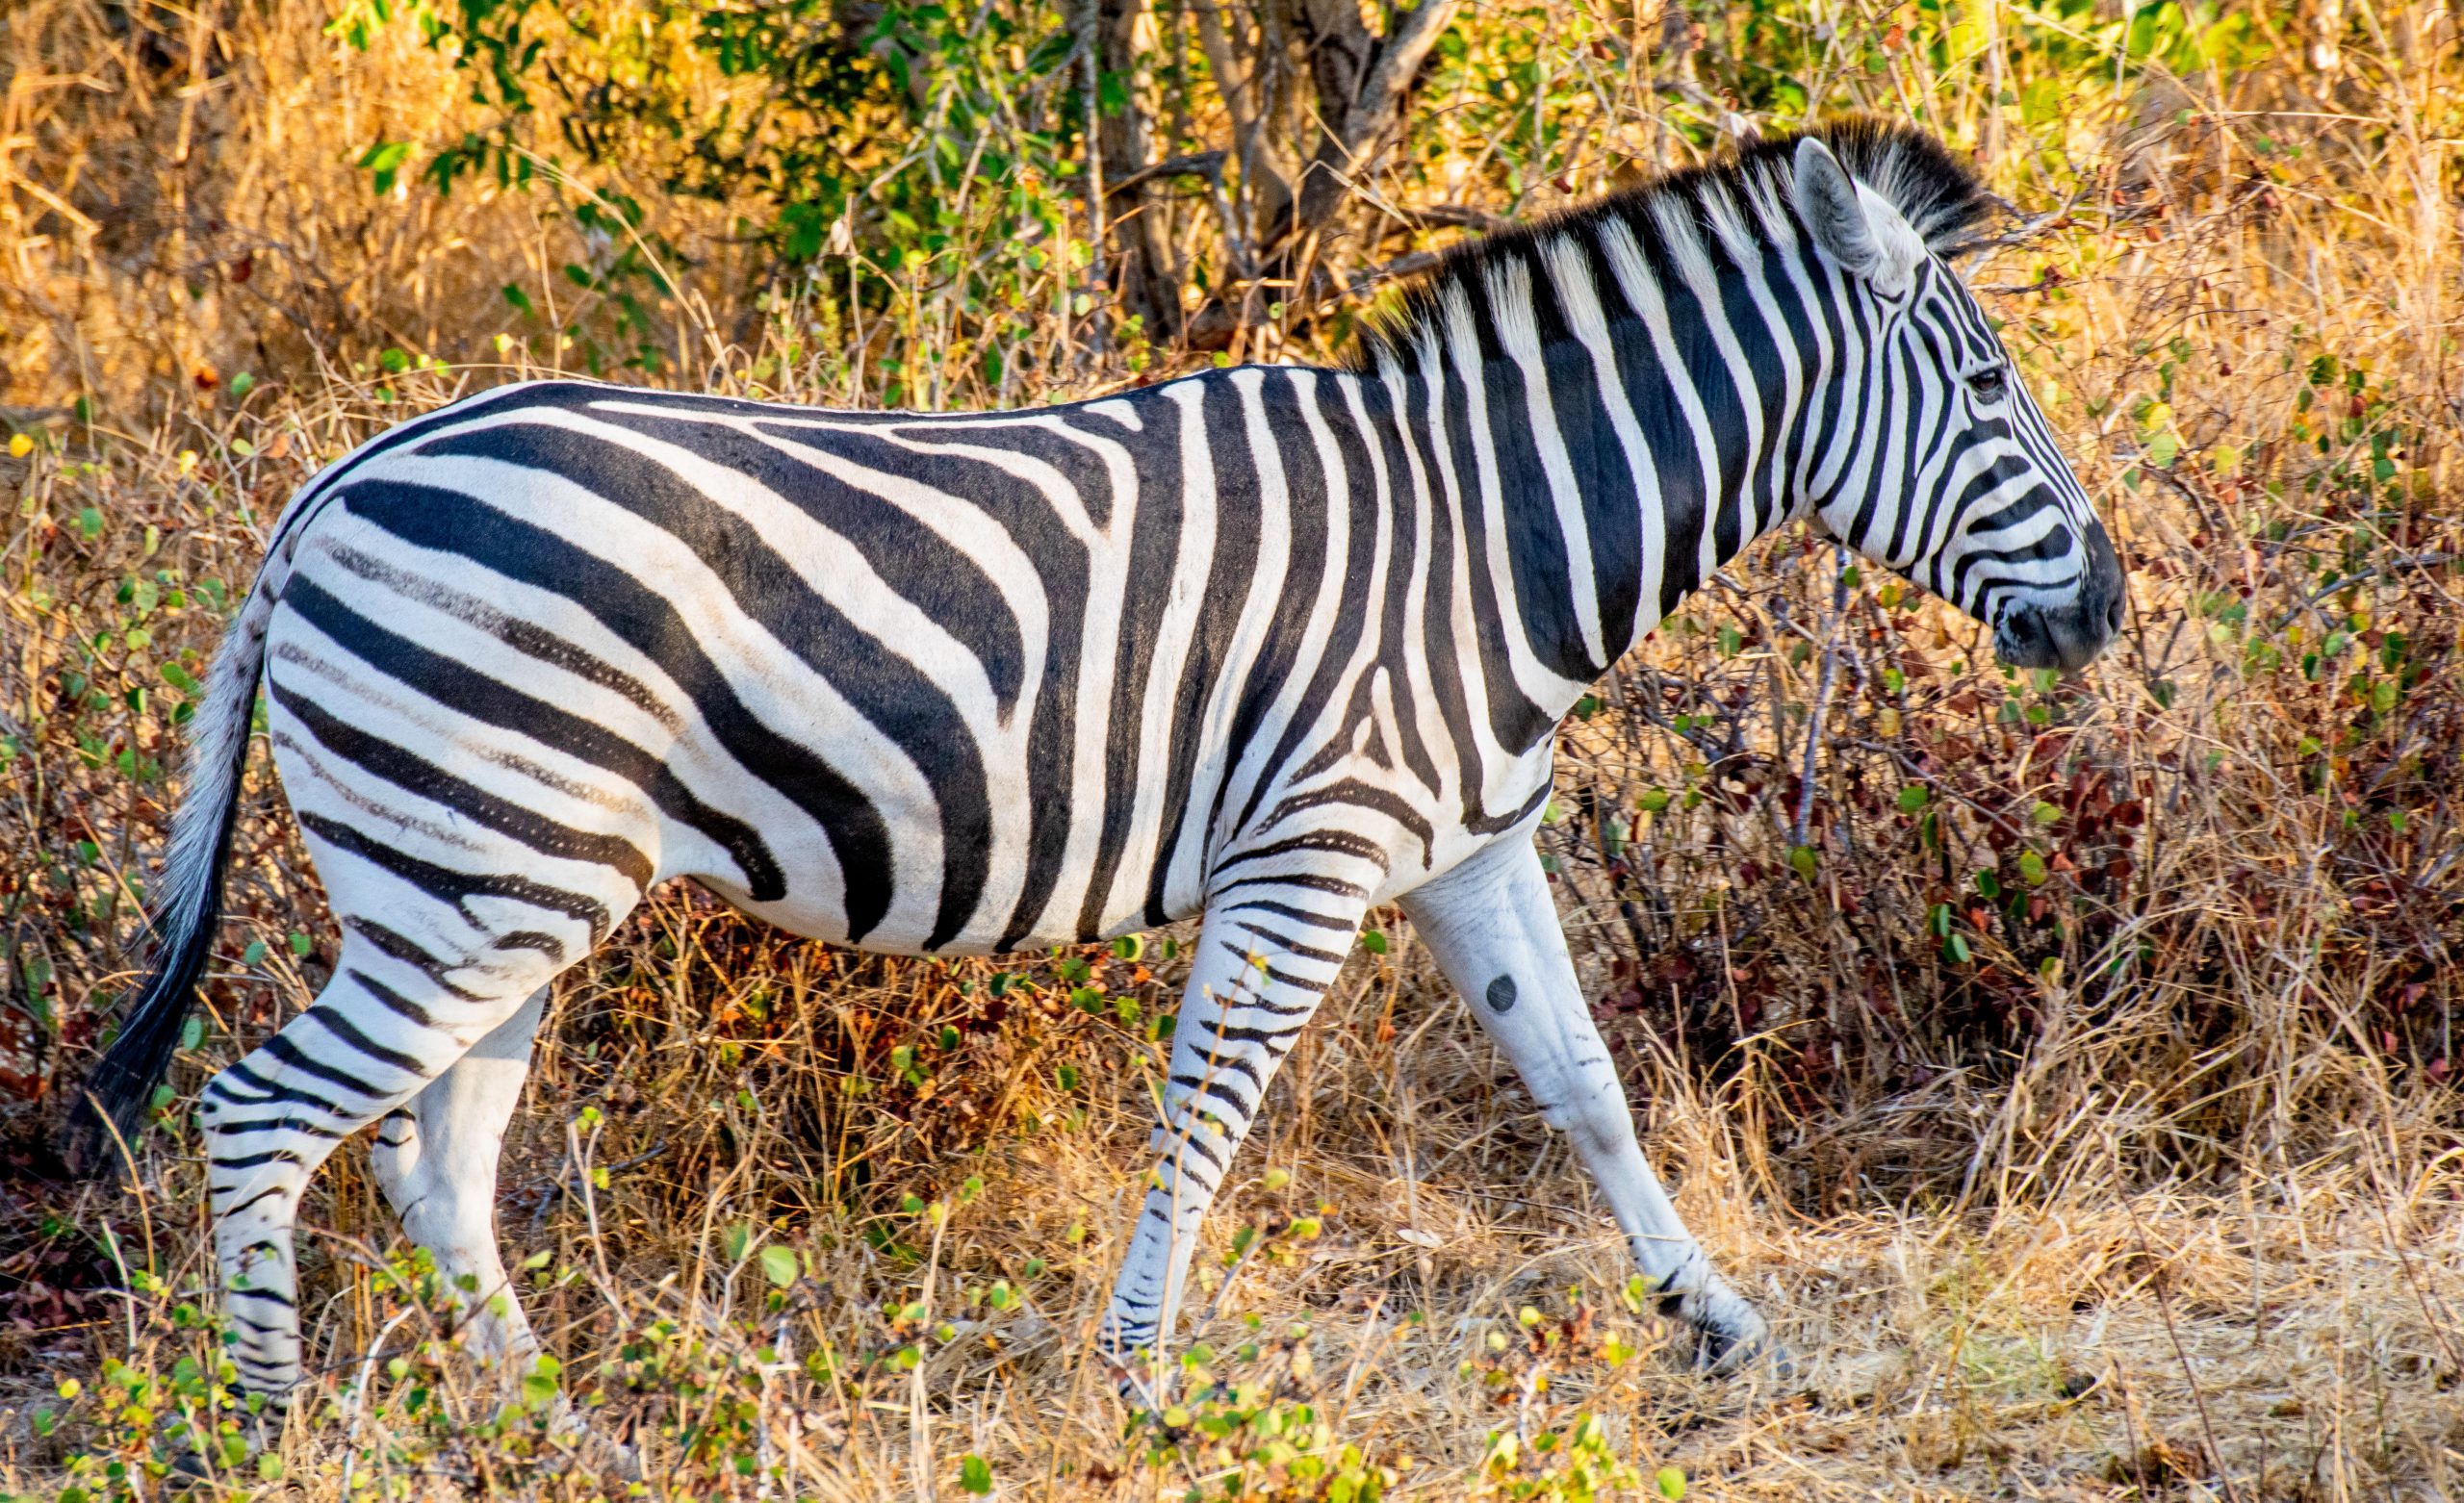 An African Zebra